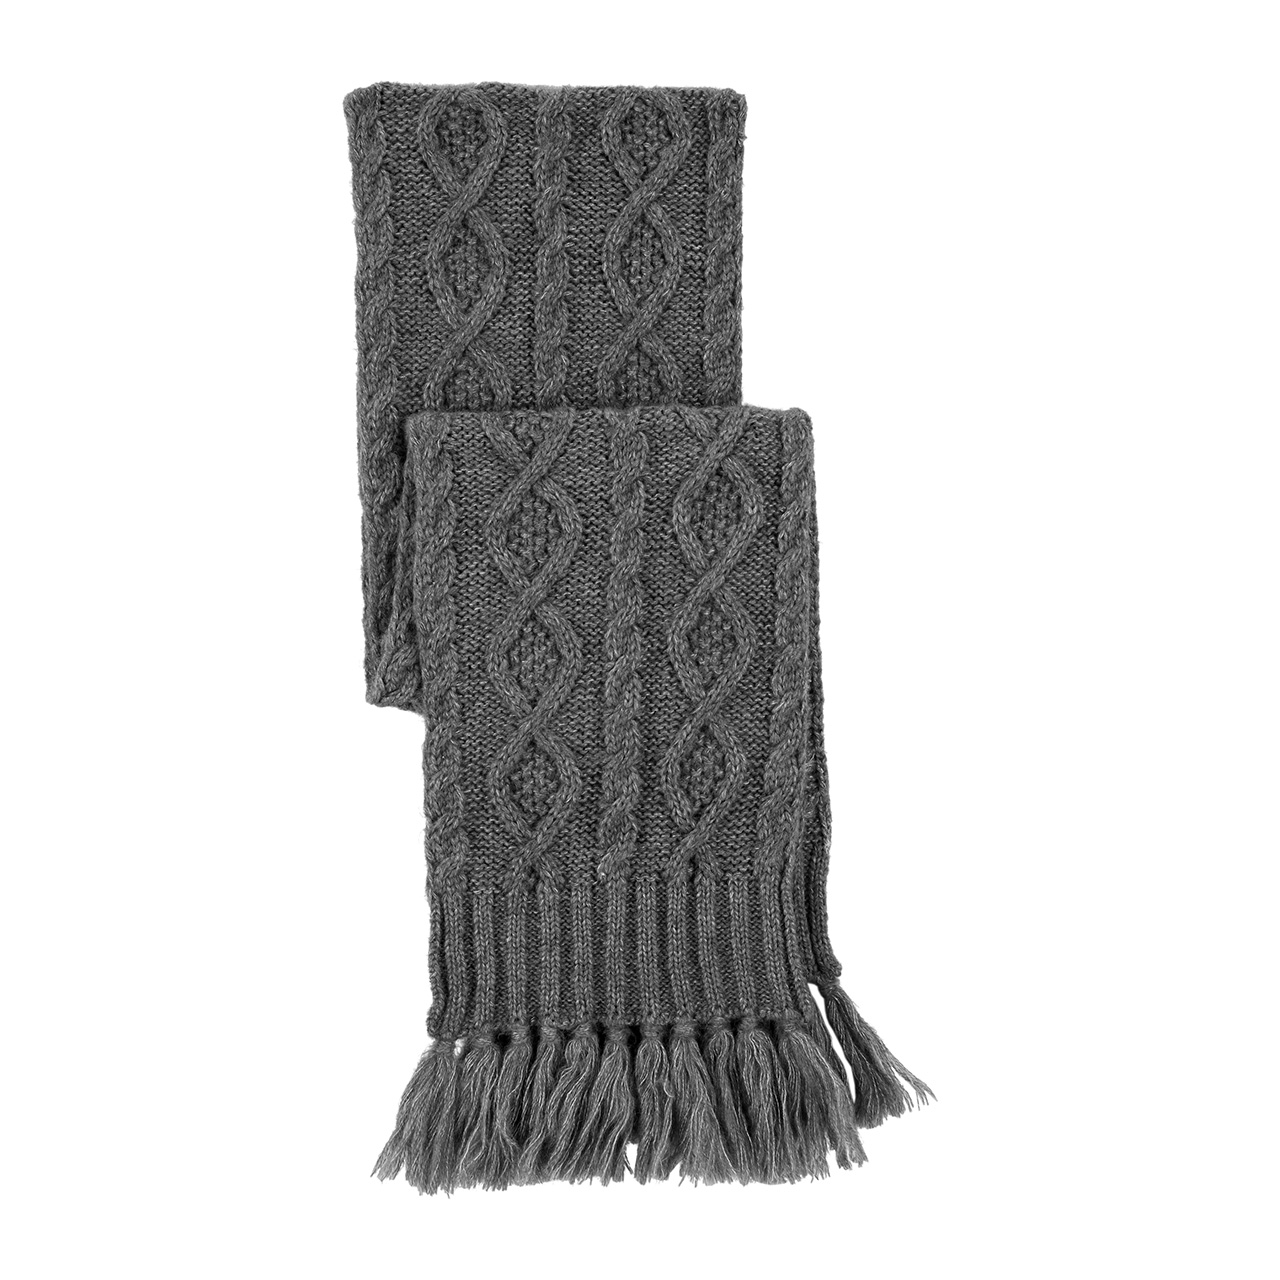 A dark grey scarf.